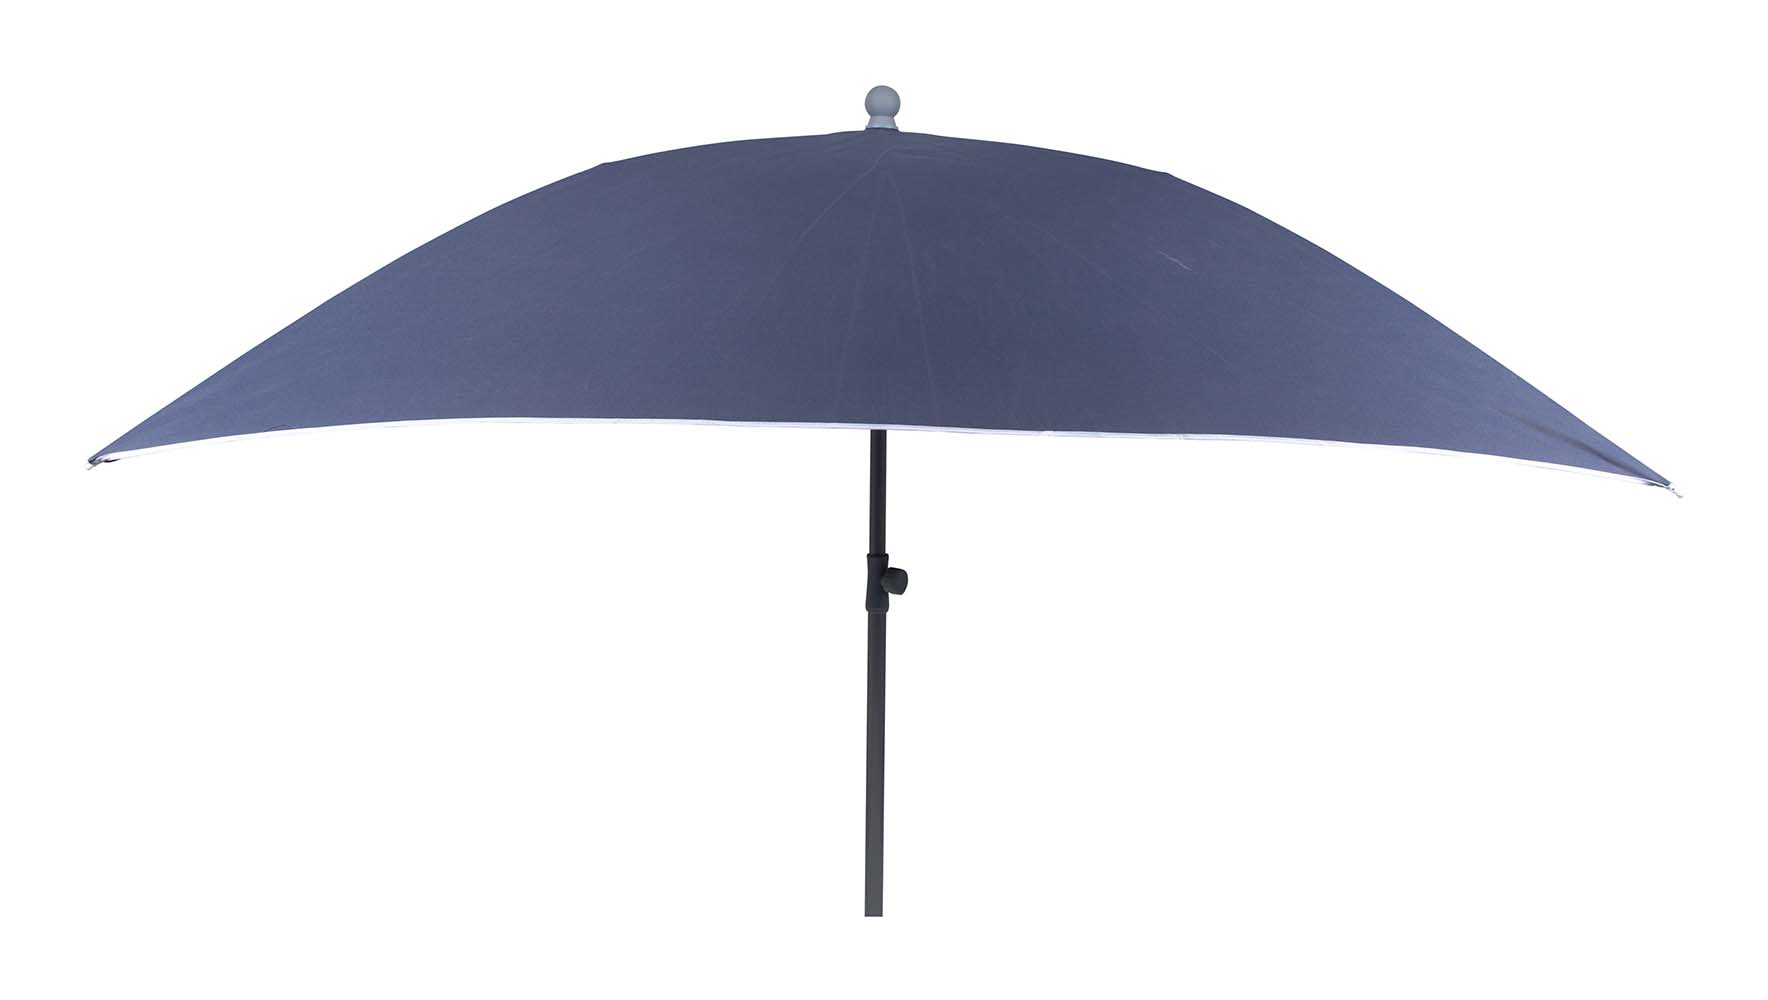 7267292 Een stevige vierkante parasol. Inclusief in hoogte verstelbare stalen steel voor in het zand, in een parasolvoet of in een tafelopening. Ideaal voor op het strand, op de camping of in de tuin. Voorzien van een stevig 160 gr/m² polyester doek. Bovendien zeer gemakkelijk mee te nemen (Ø 17x100 cm). De steel van de parasol heeft een diameter van 30 millimeter.